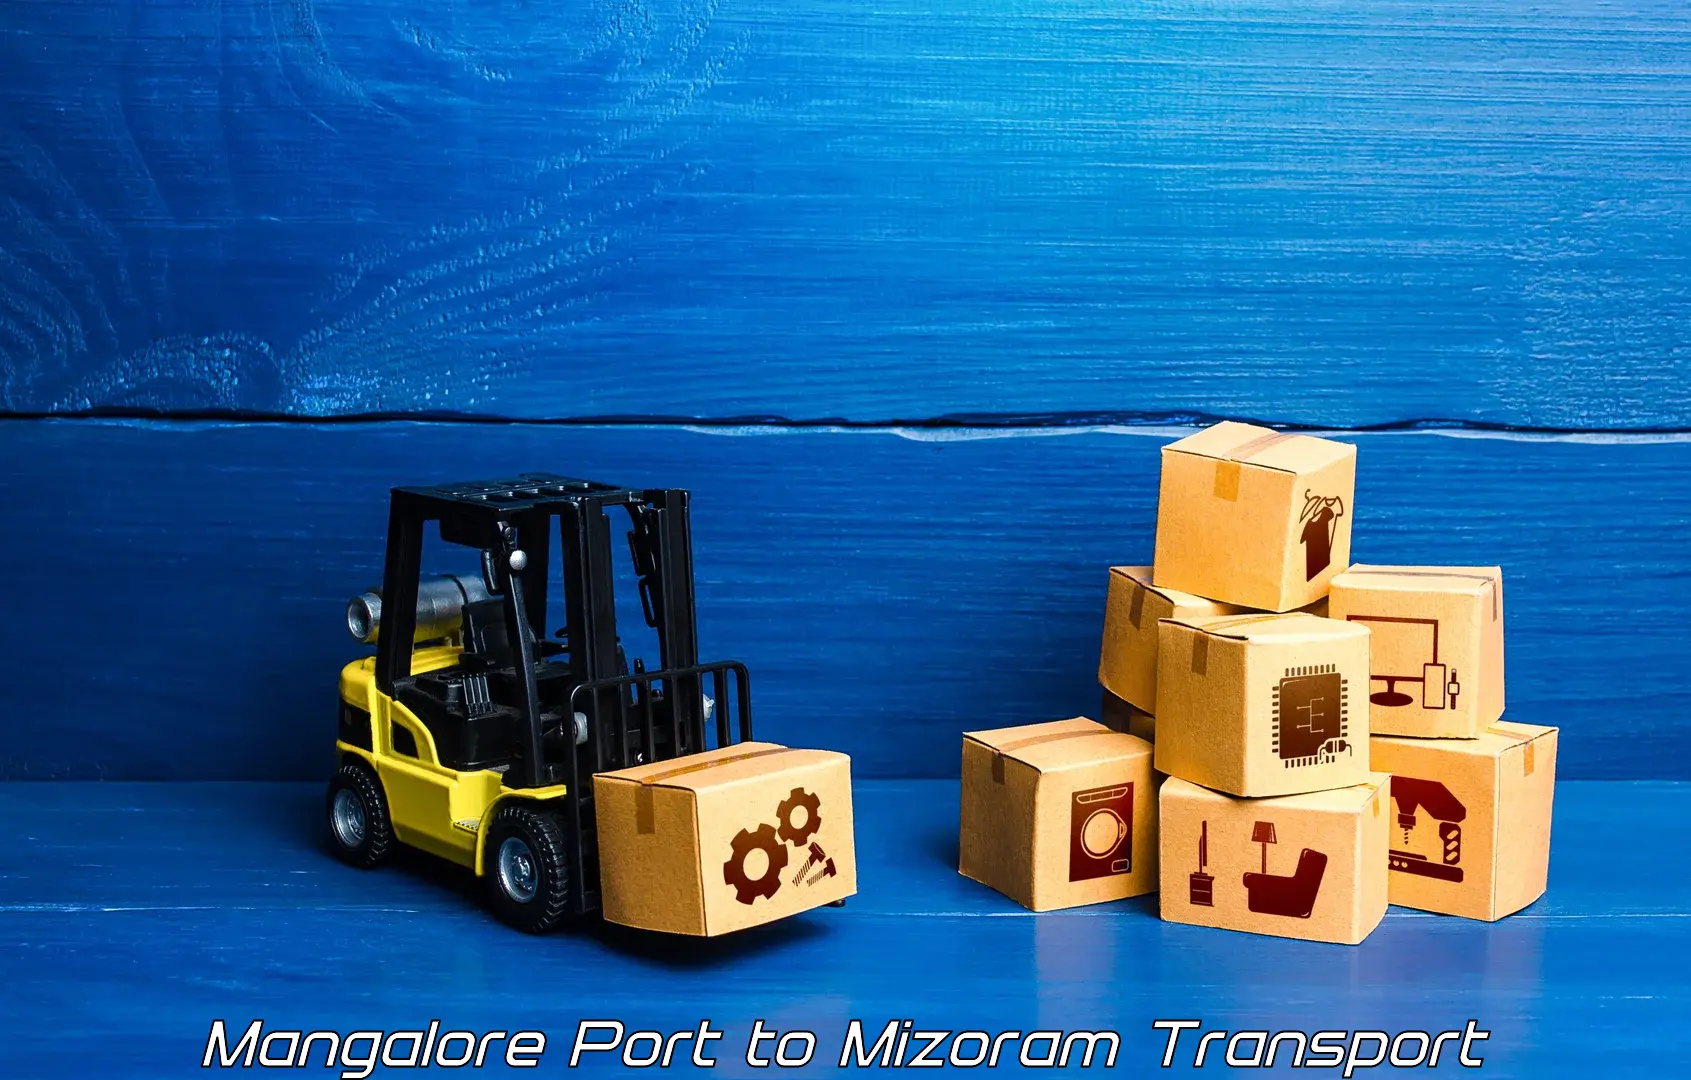 Parcel transport services Mangalore Port to Mizoram